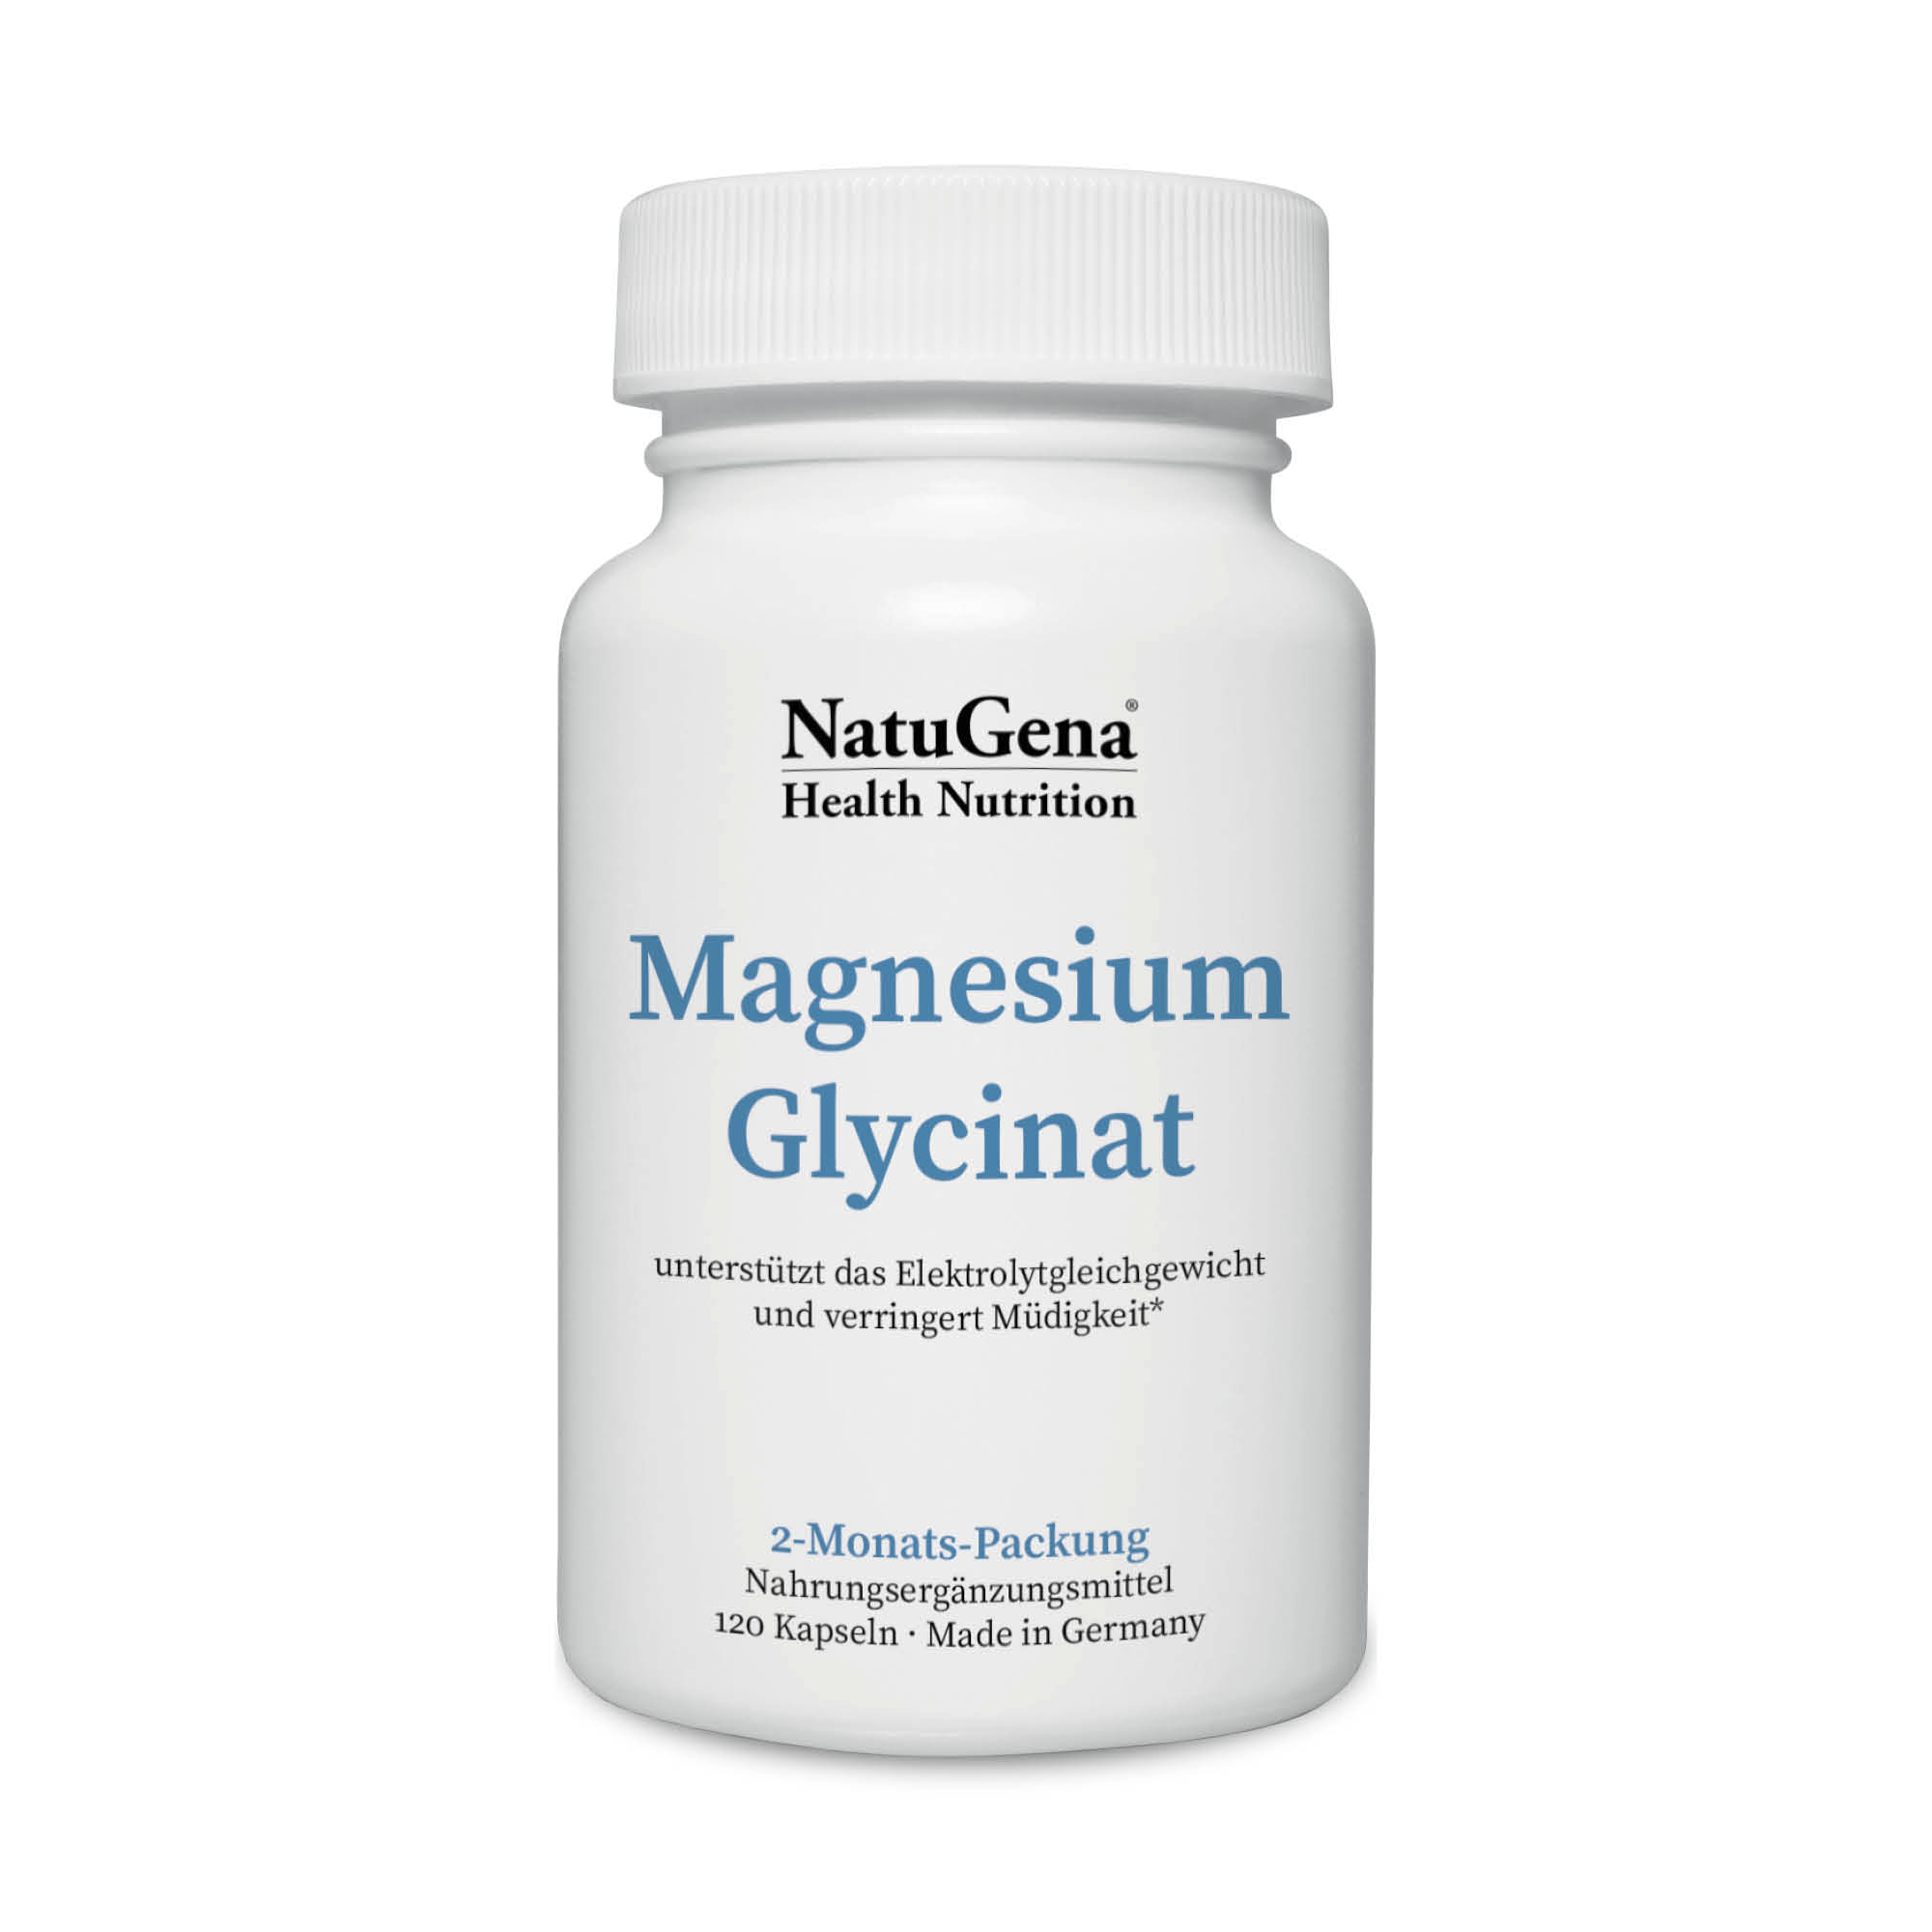 NatuGena Magnesium-Glycinat | 120 Kapseln | Hochwertiges Magnesiumbisglycinat für optimale Bioverfügbarkeit